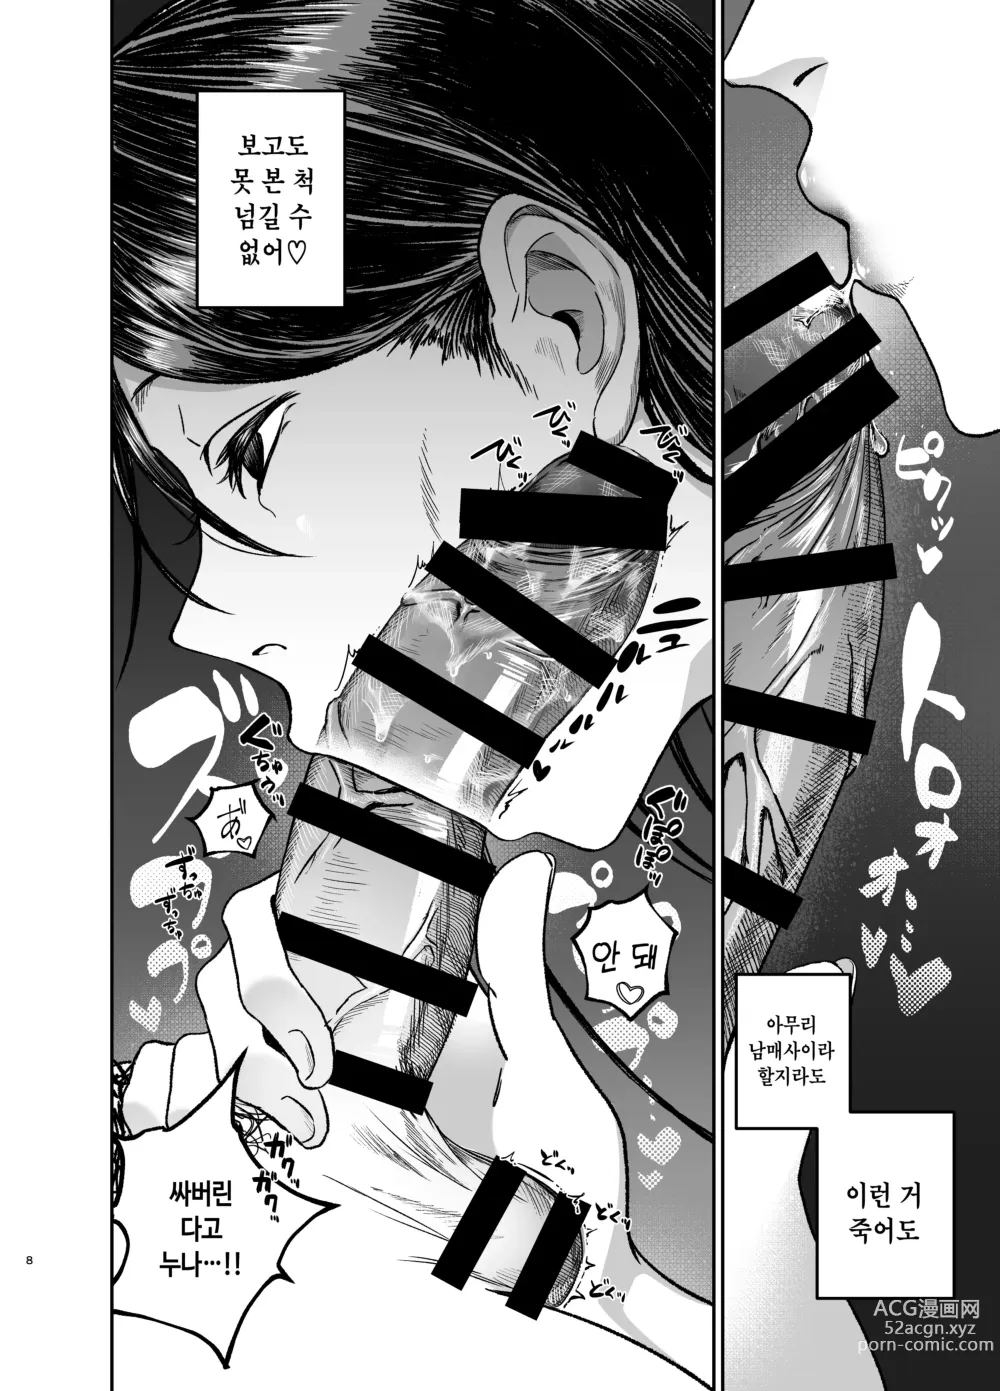 Page 8 of doujinshi 누나로 딸치는 동생과 자위 마려운 누나가 조우한 결과